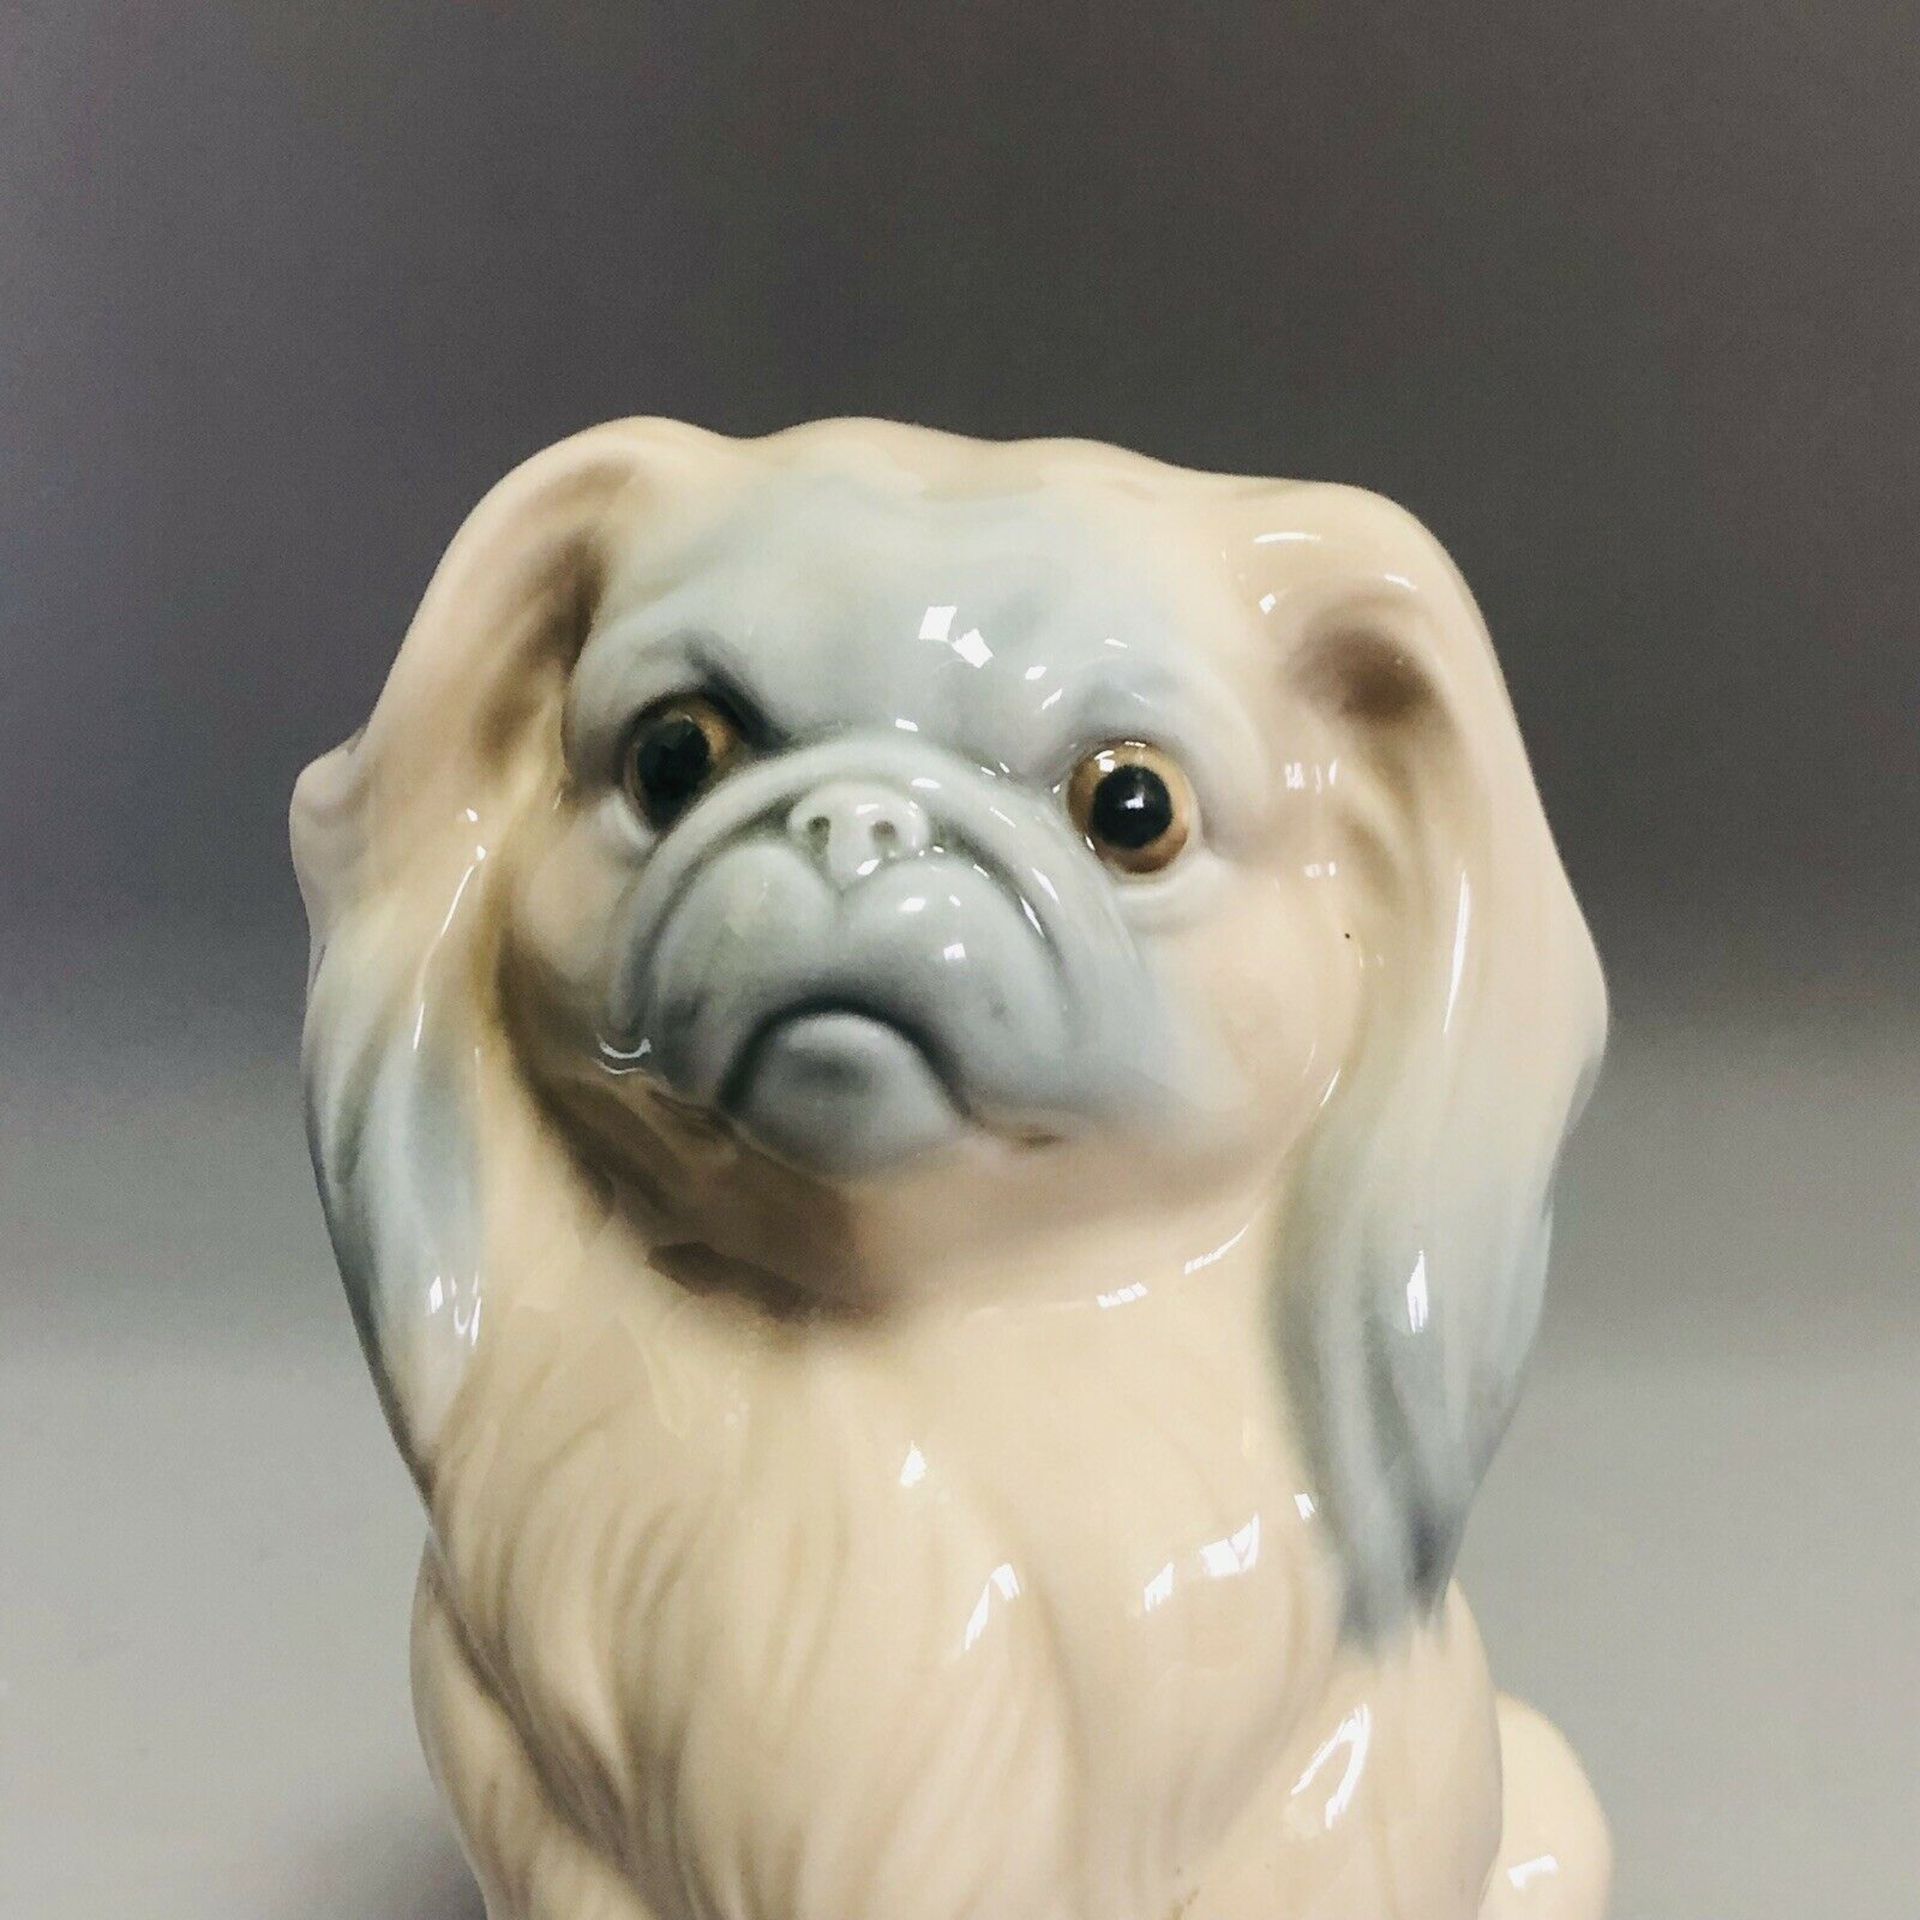 Vintage Spanish Porcelain Seated Pekingese Dog - 6" Figurine by Lladro - Image 3 of 8